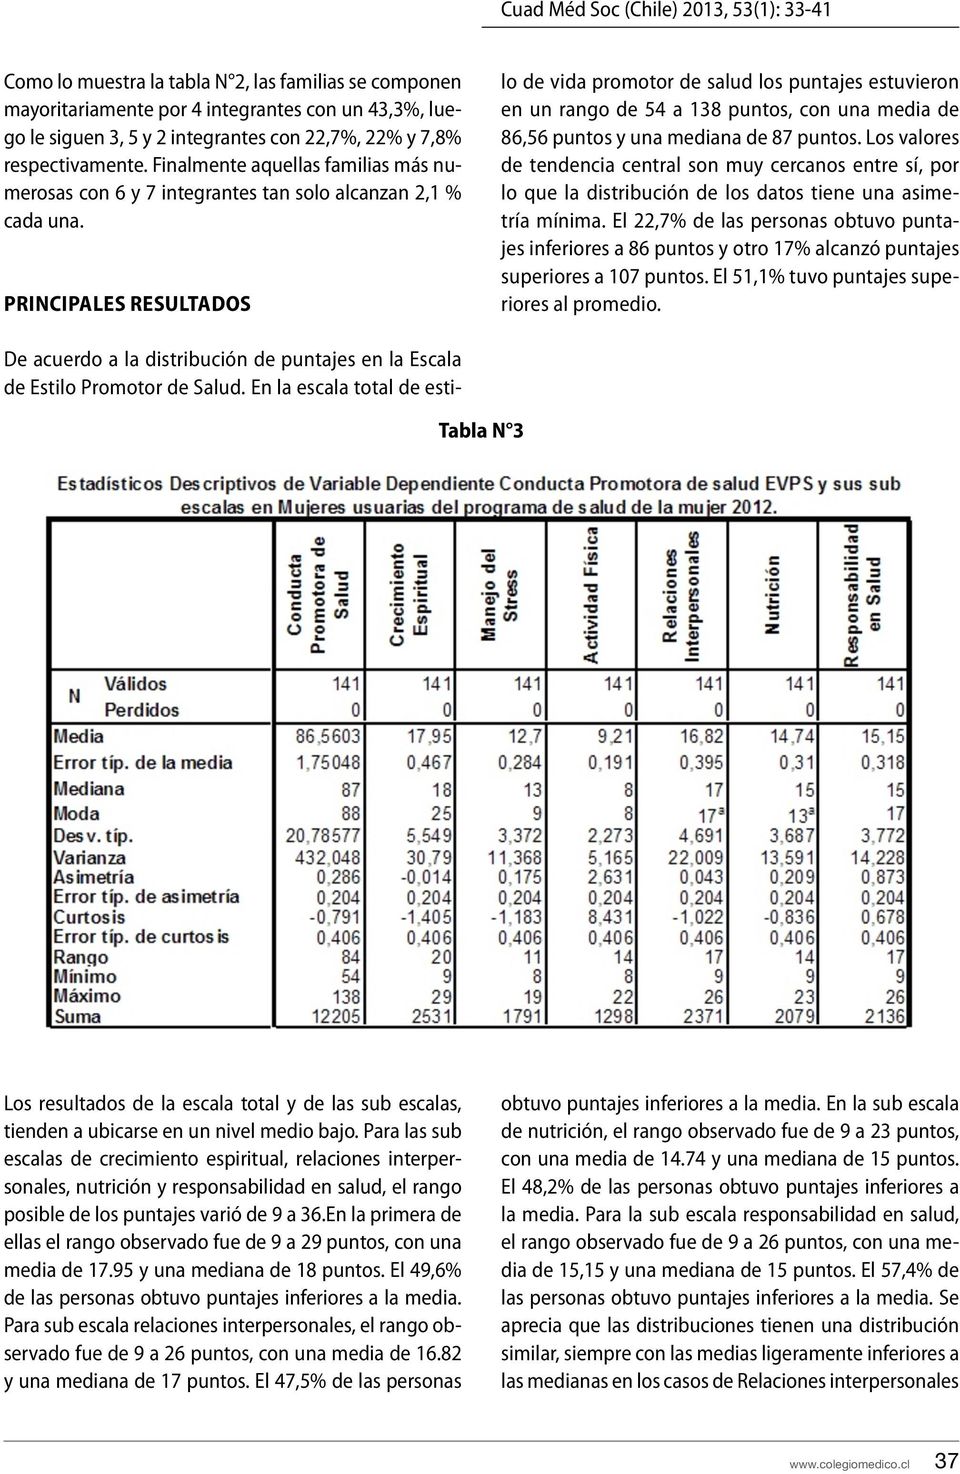 Principales Resultados De acuerdo a la distribución de puntajes en la Escala de Estilo Promotor de Salud.